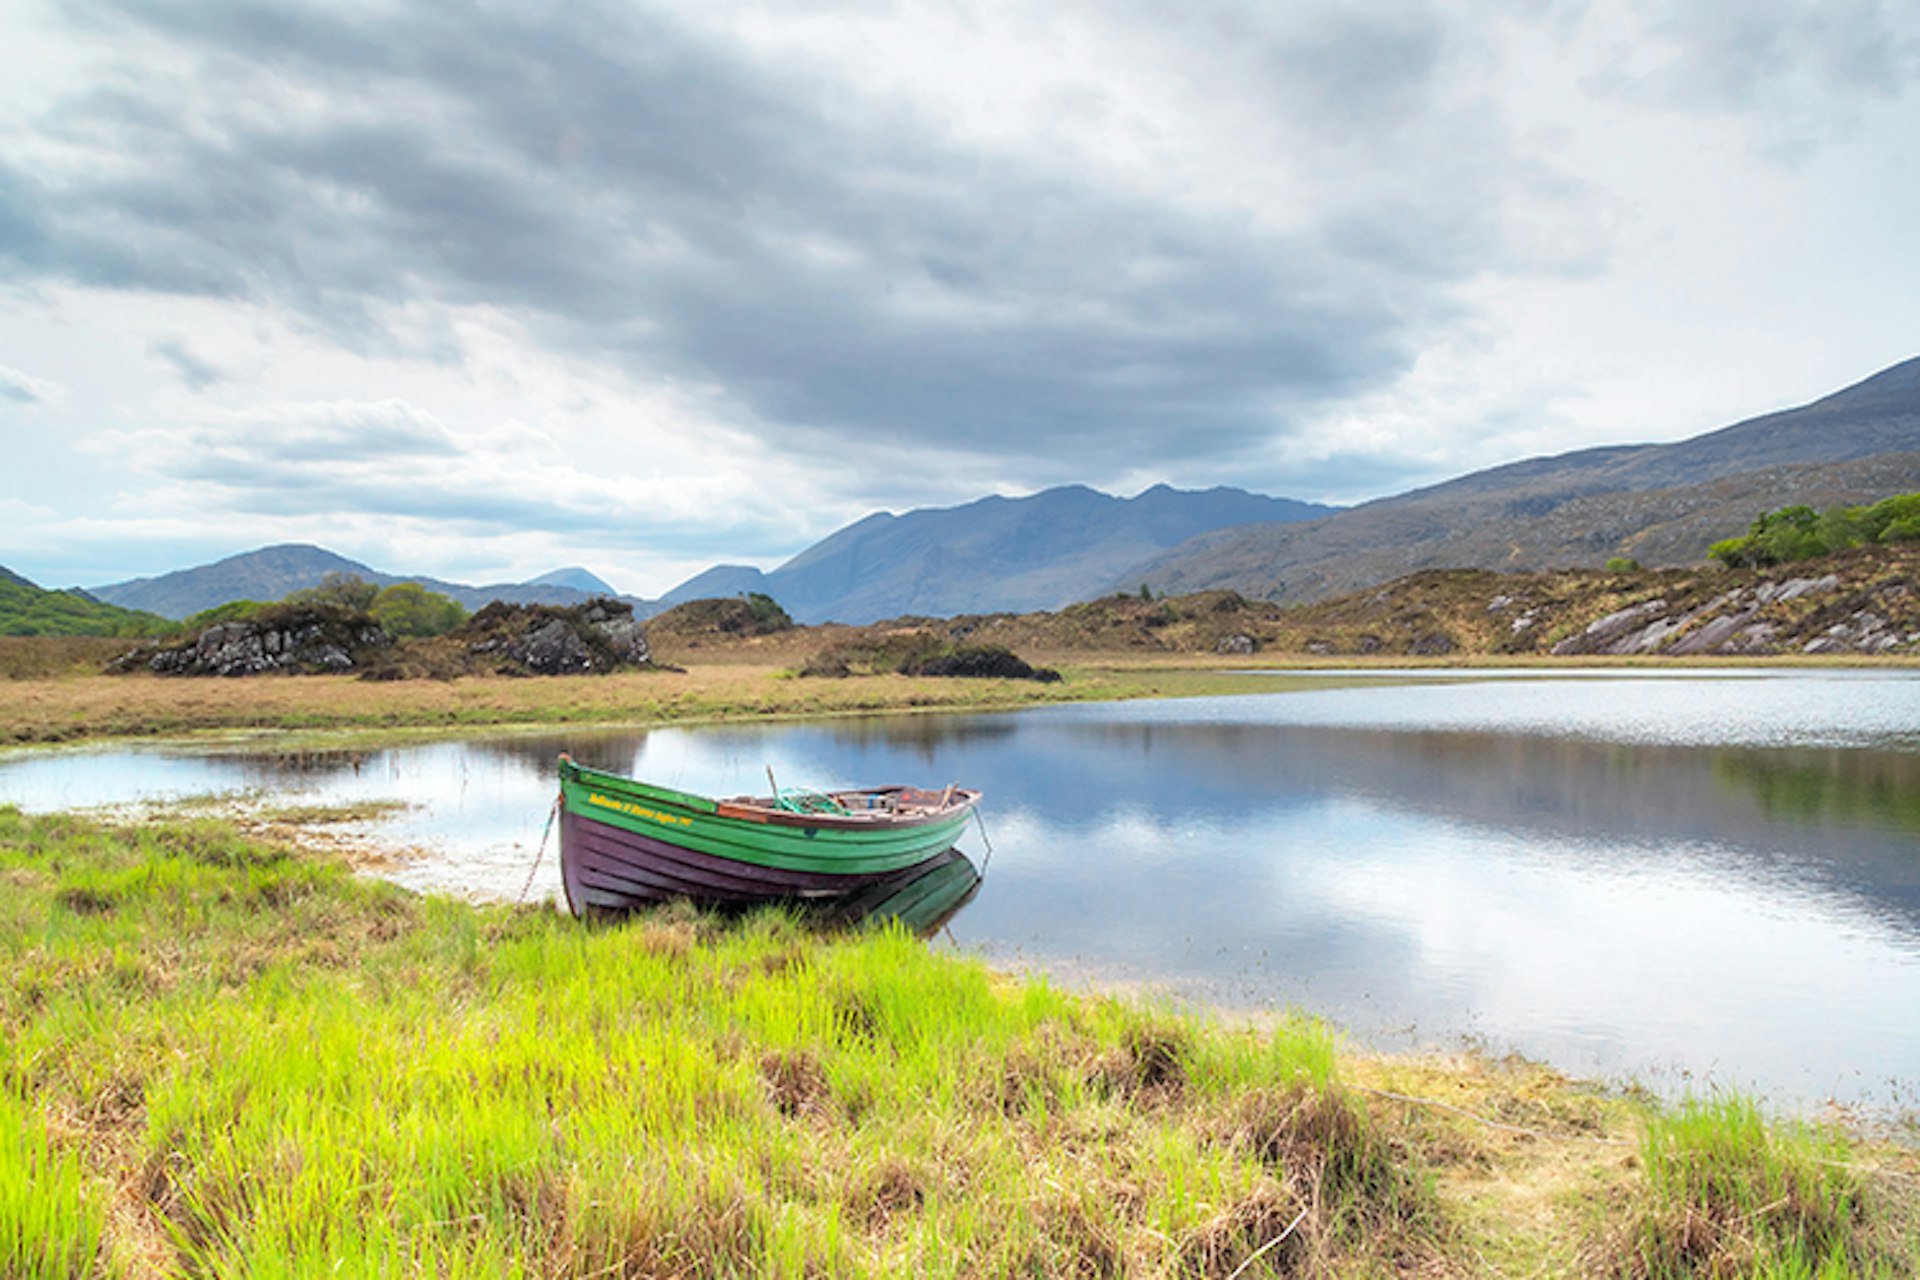 County Kerry boasts some of Ireland's most gape-worthy scenery. Image by Kwiatek7 / Shutterstock